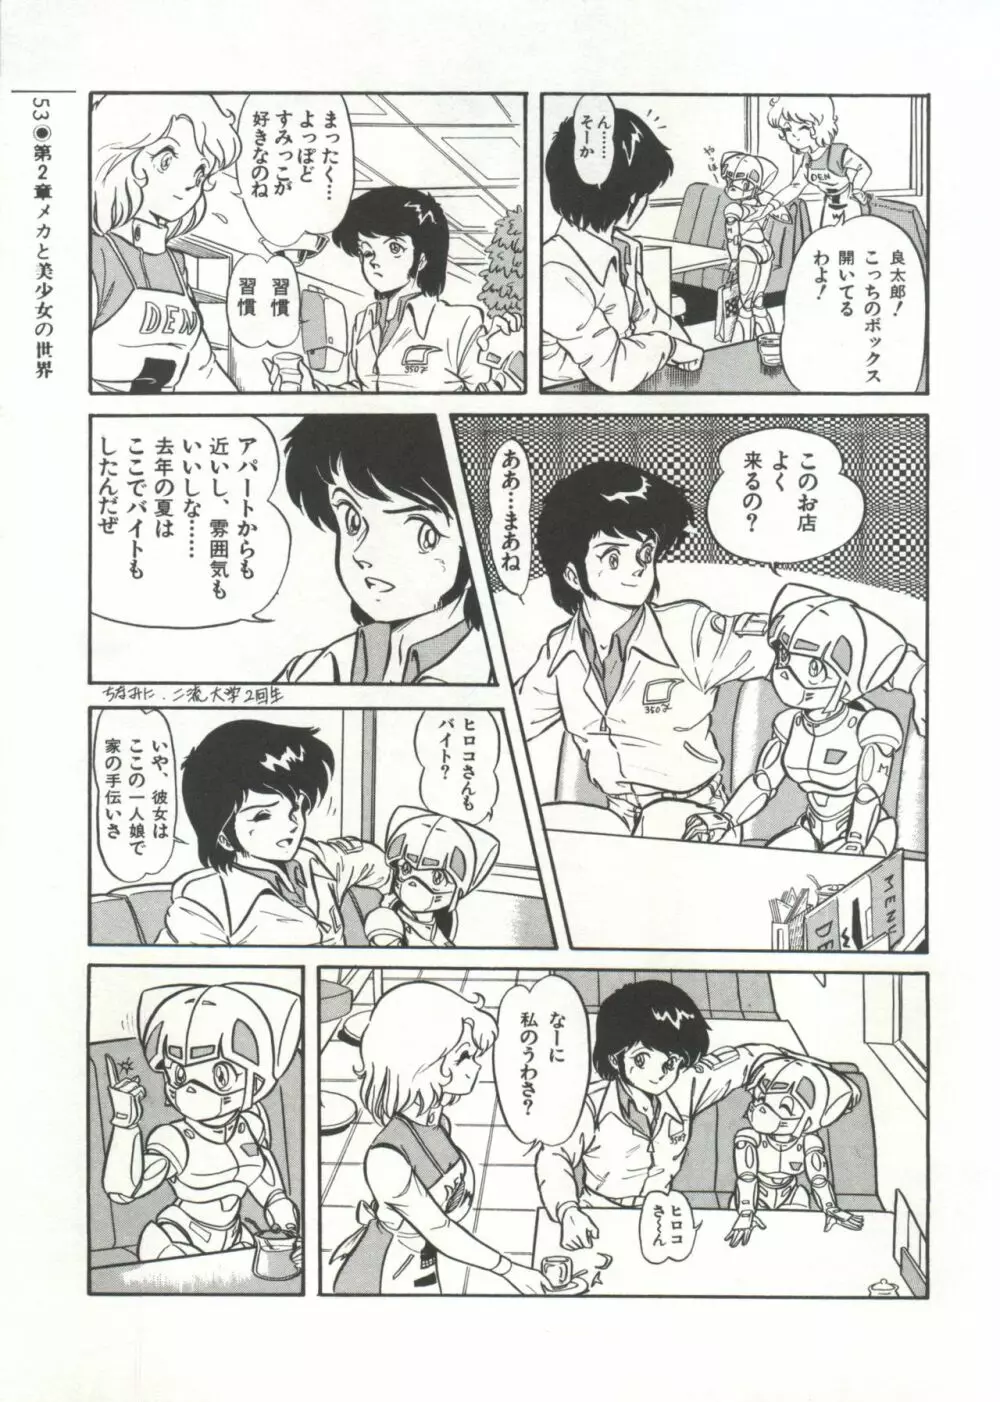 [Anthology] 美少女症候群(2) Lolita syndrome (よろず) 56ページ